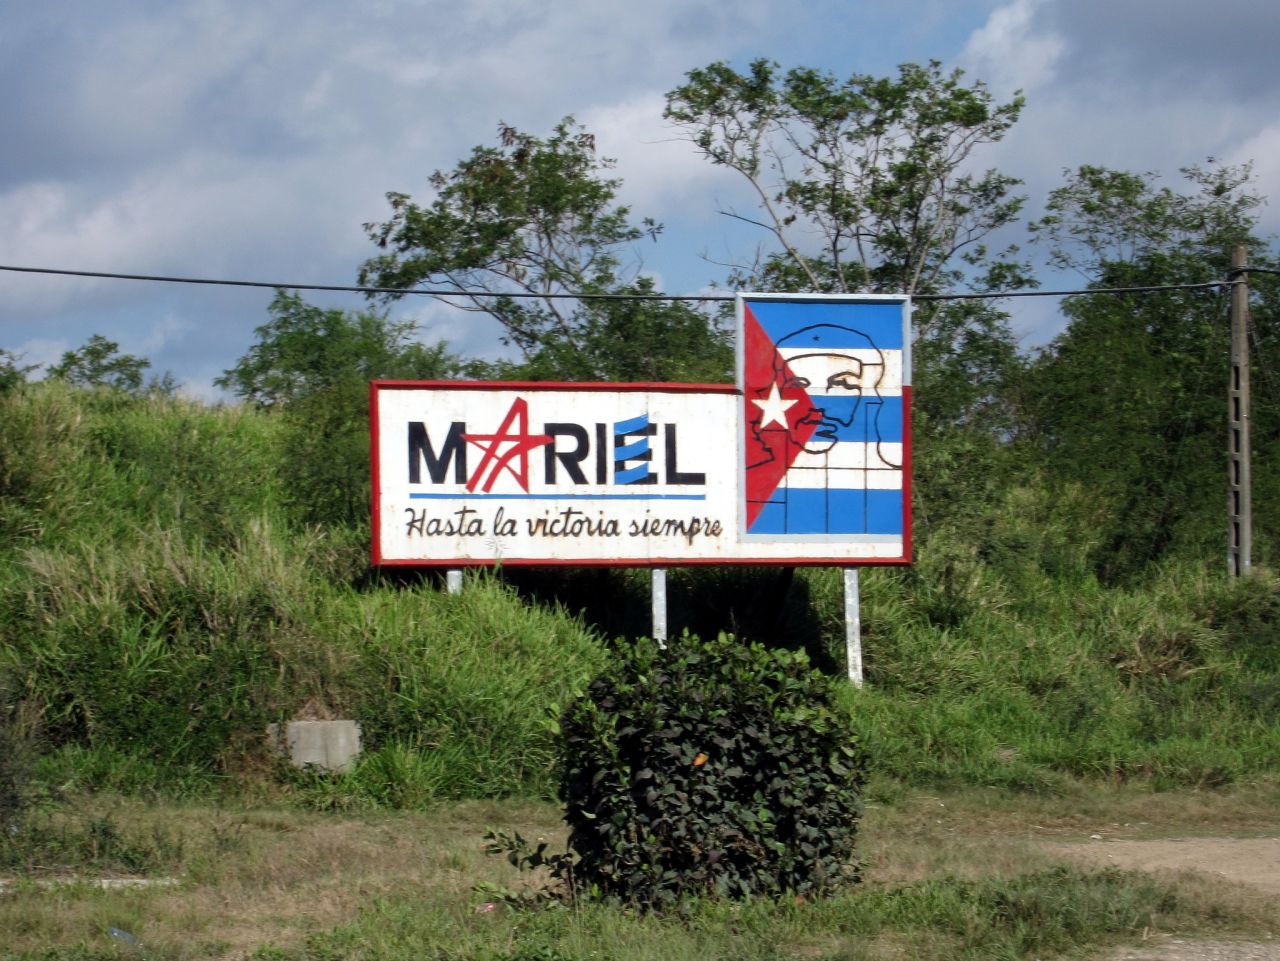 "El objetivo para Mariel y la zona libre es expandir la infraestructura, aumentar las exportaciones, reducir las importaciones y desarrollar proyectos de alta tecnología que crearán empleos", explica un experto.